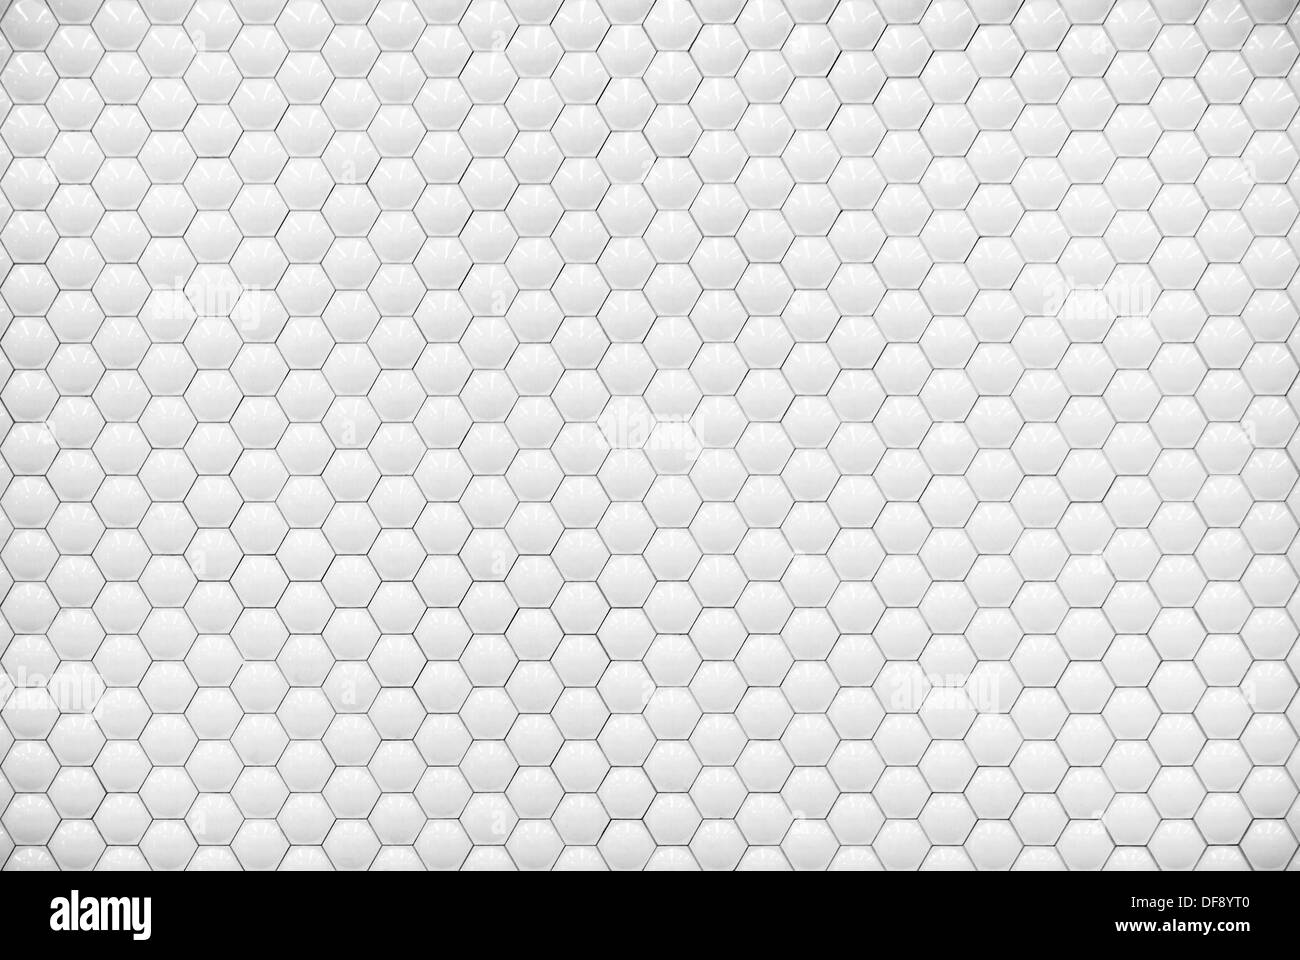 White shiny hexagon bubble tile texture background Stock Photo